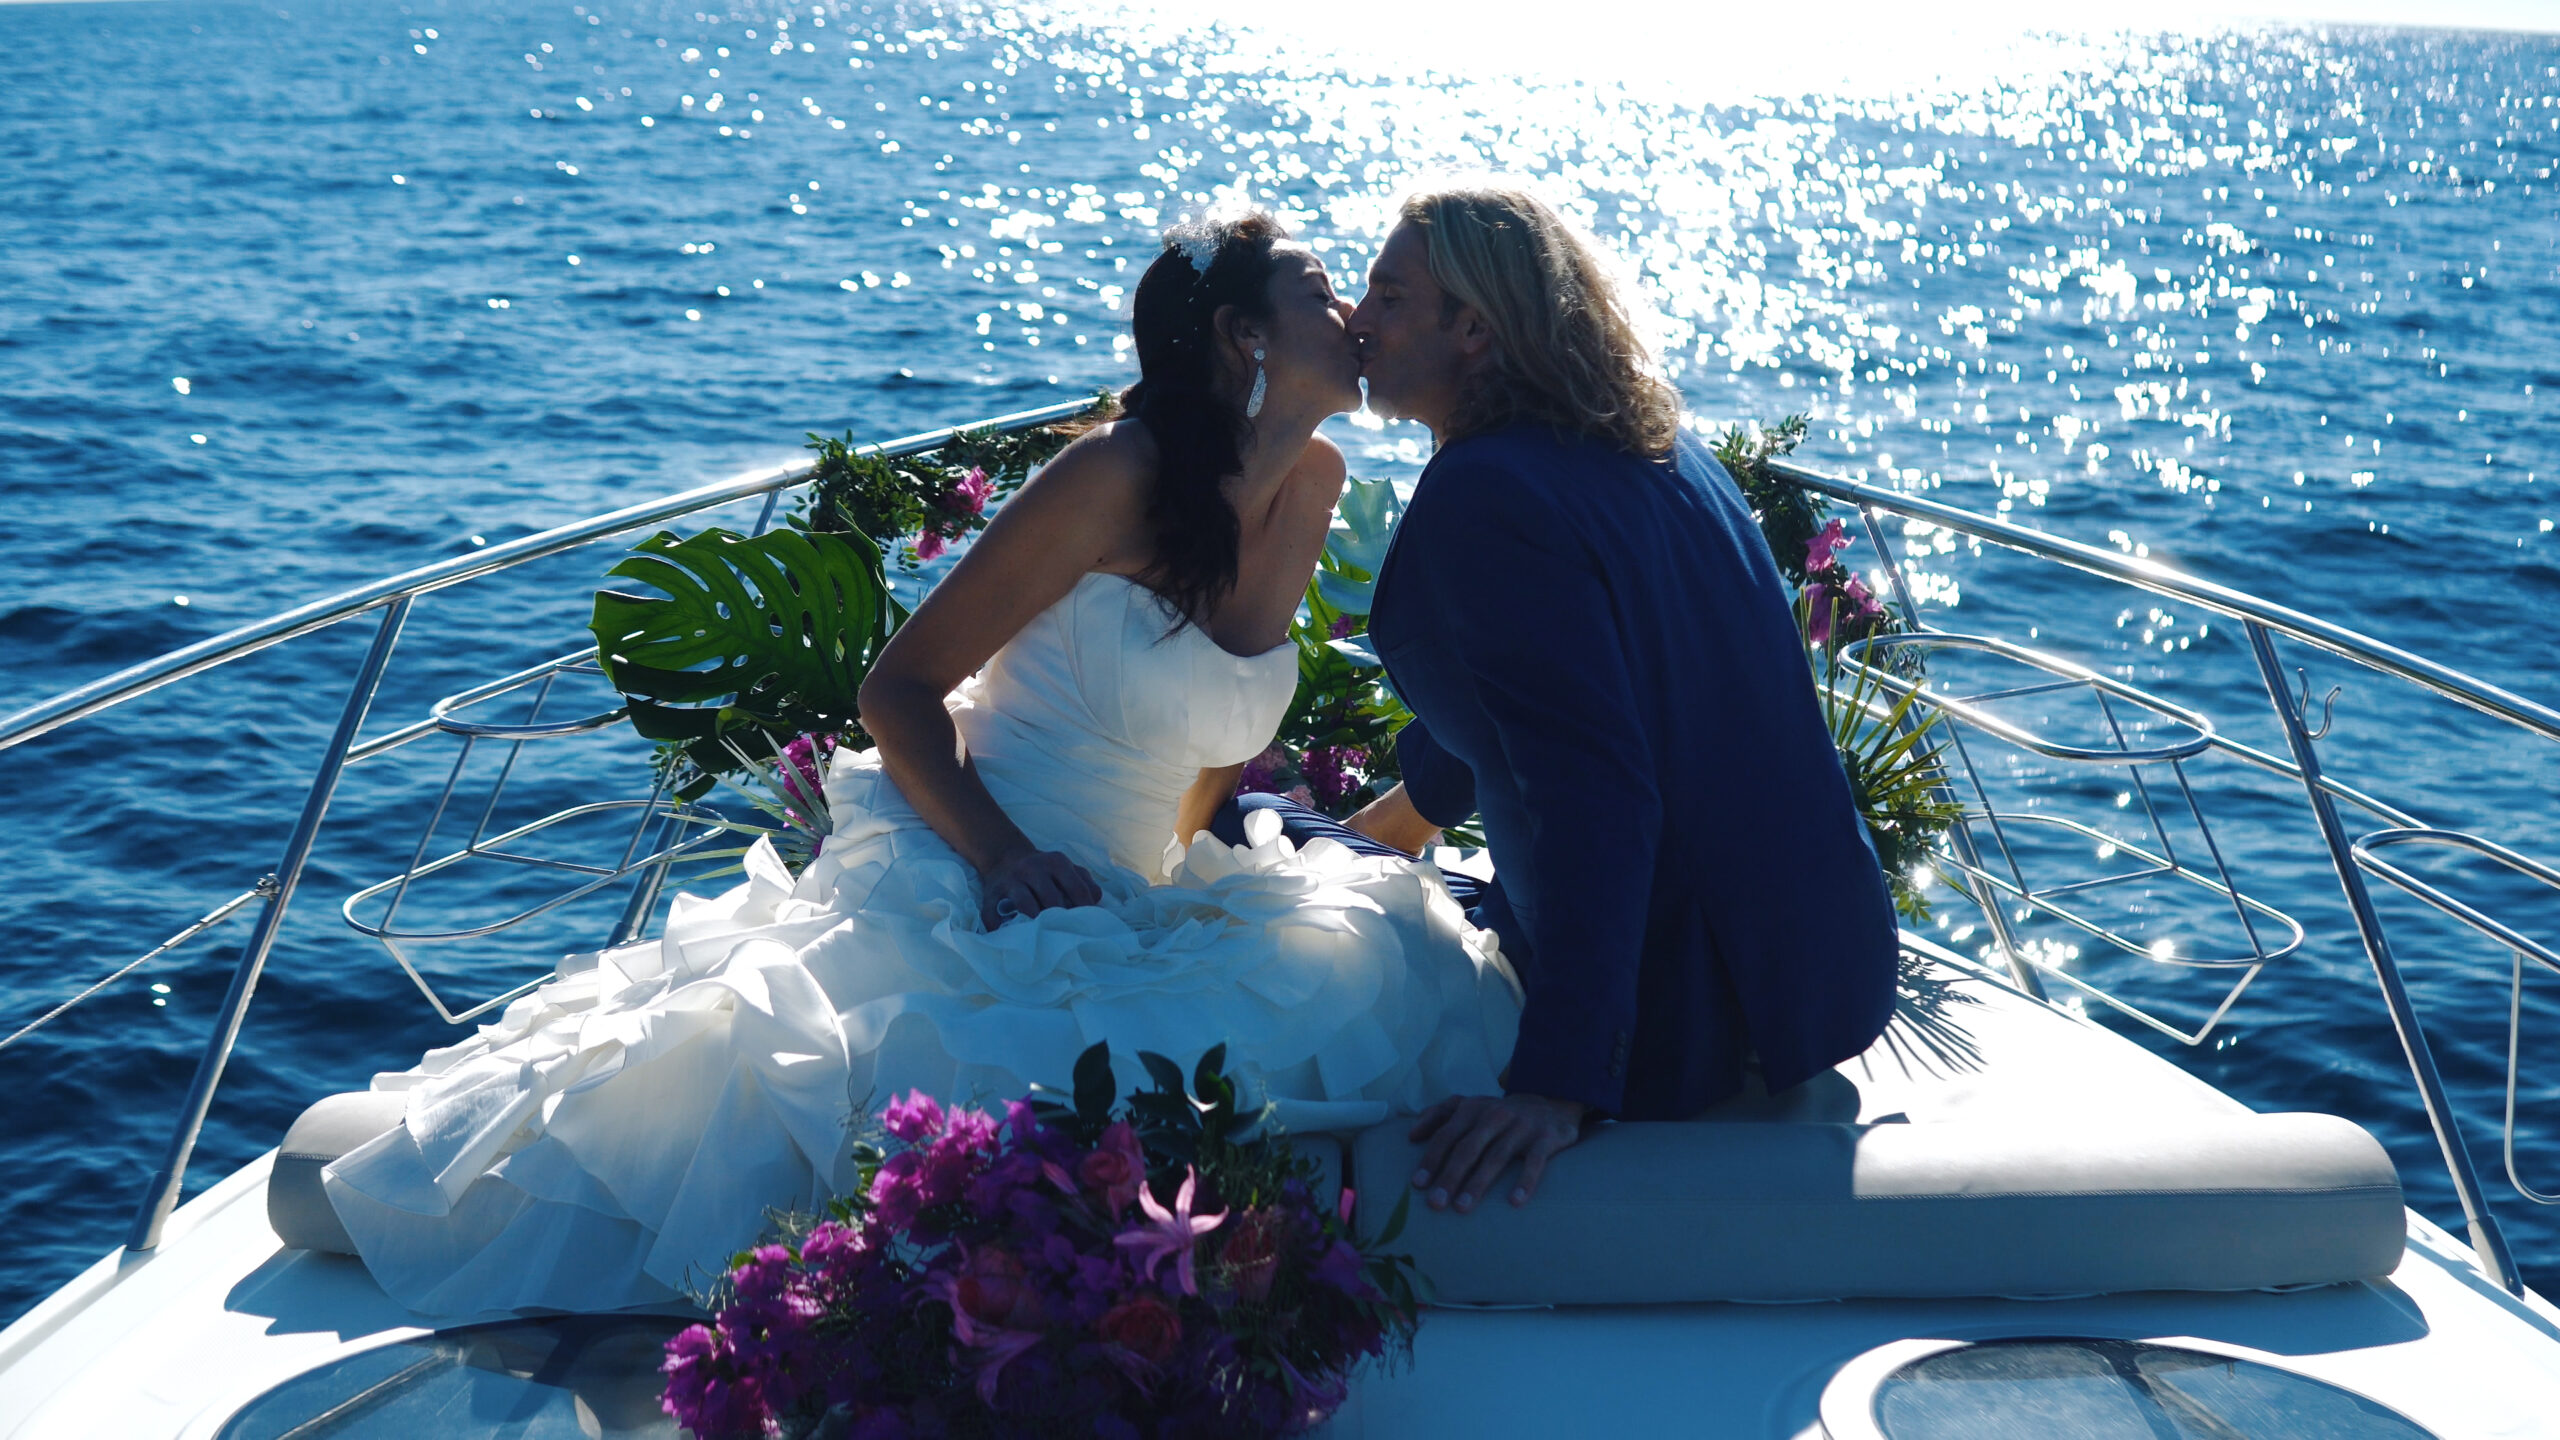 winter wedding in Spain on a boat